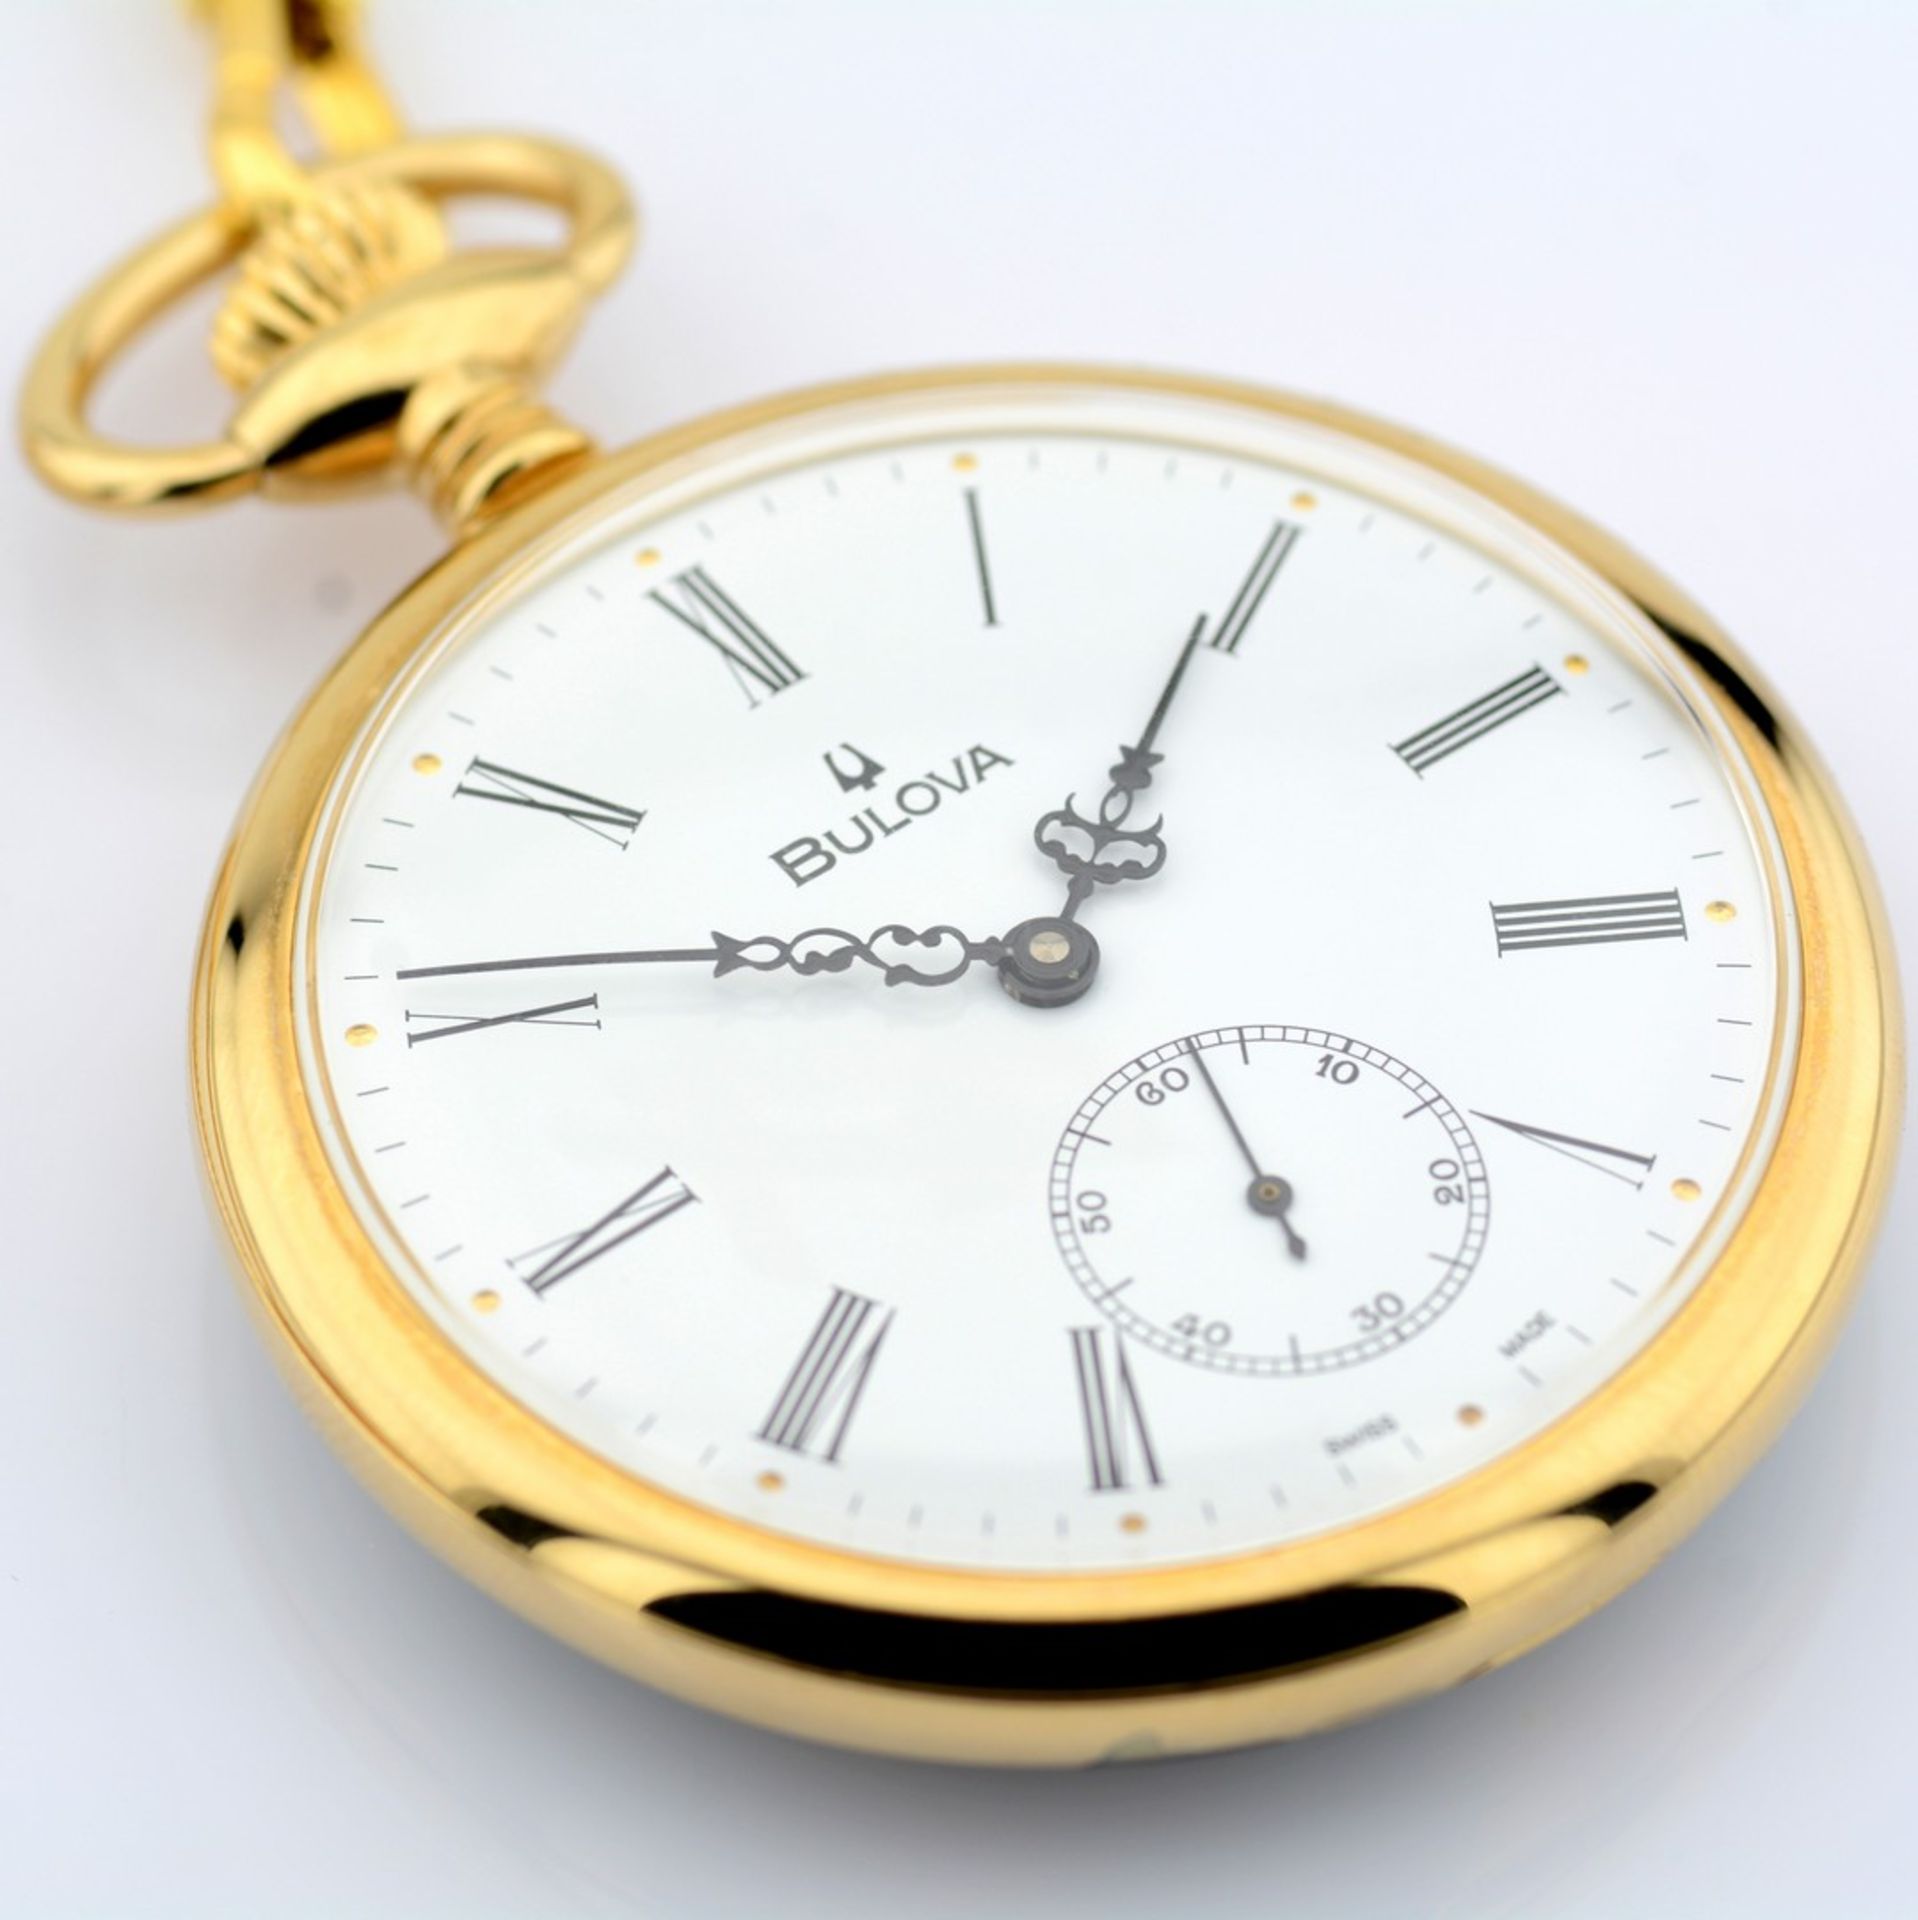 Bulova / Pocket Watch - Gentlmen's Gold/Steel Wrist Watch - Image 4 of 8